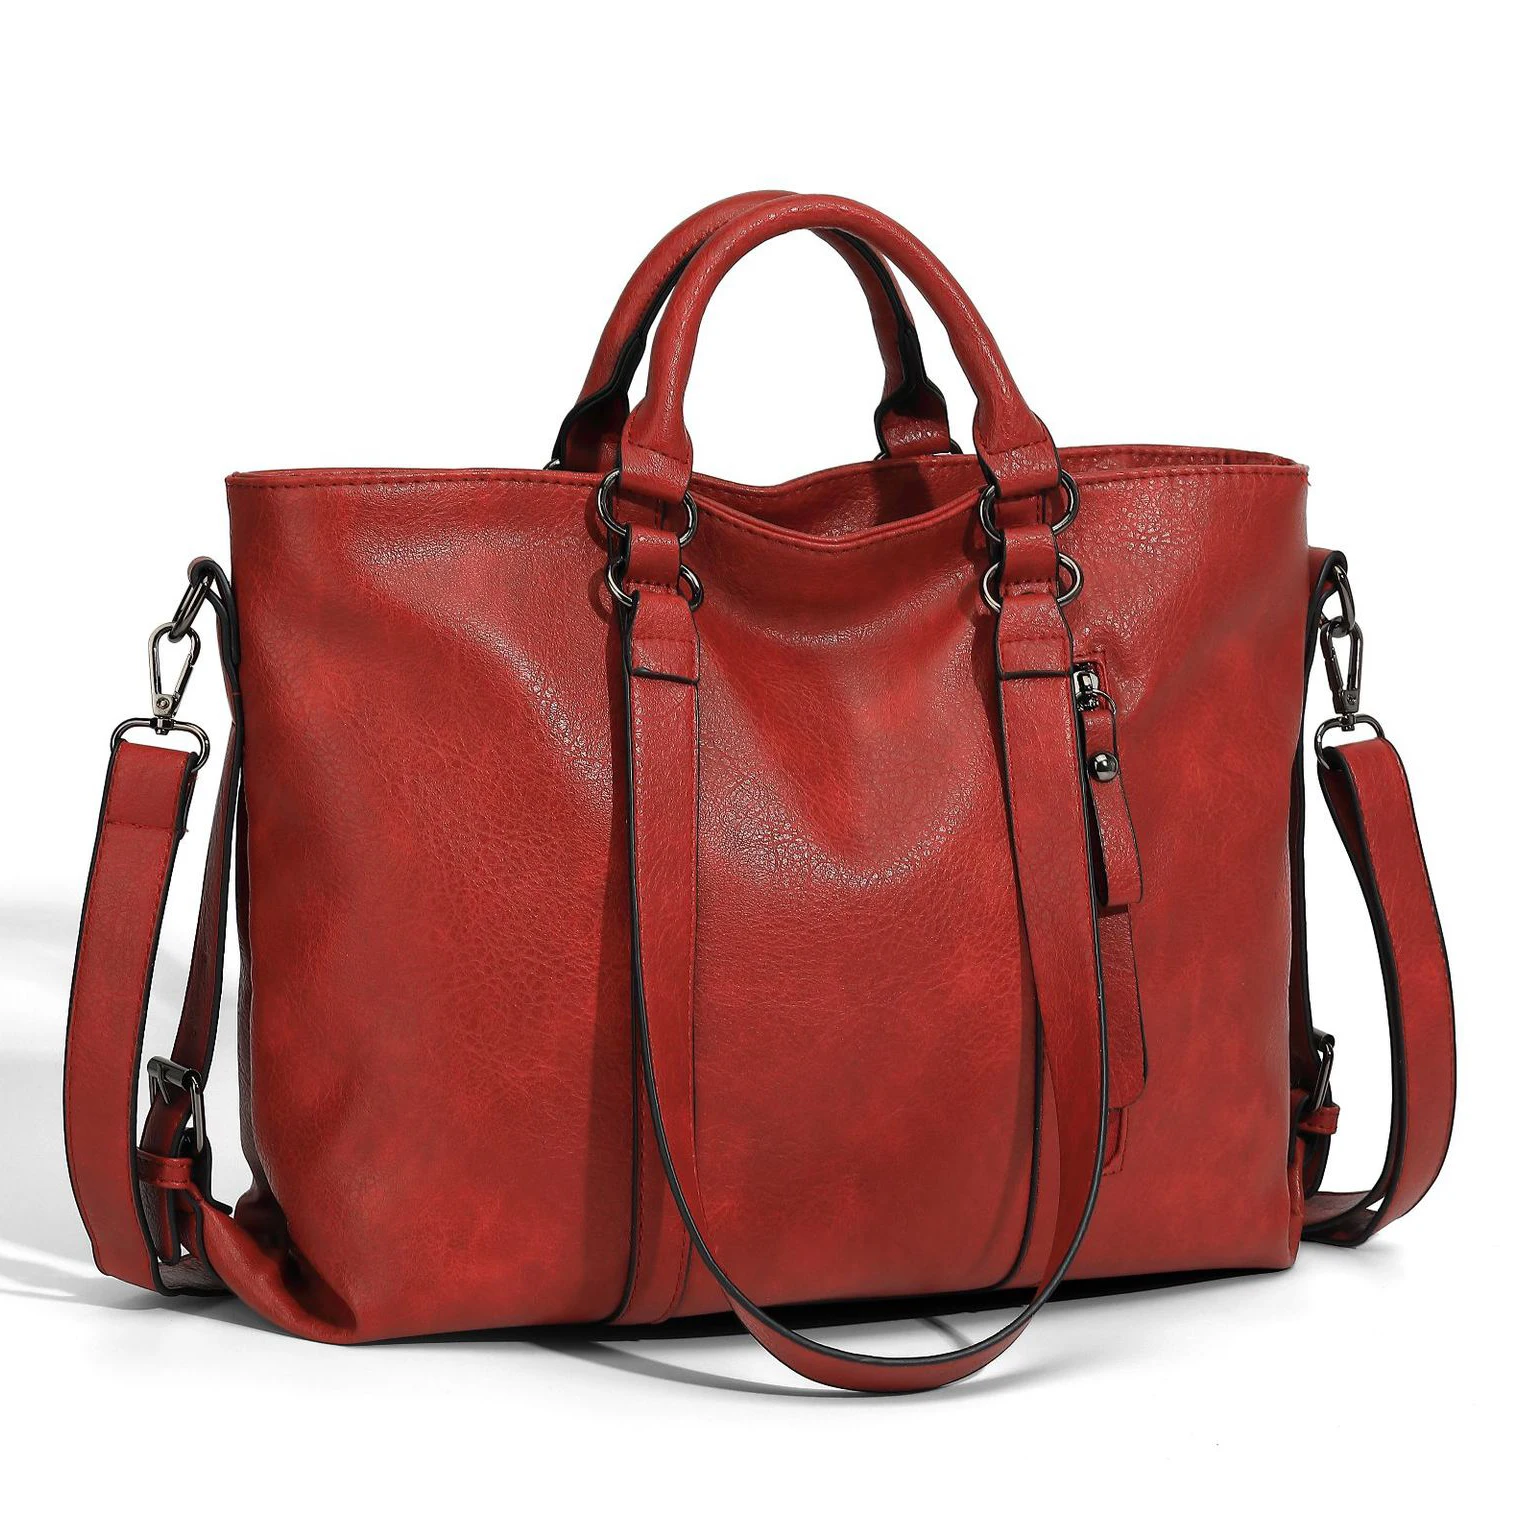 Vintage Large Capacity Women's Handbag Fashion Leather Shoulder Messenger Bag Luxury Female Tote Bag